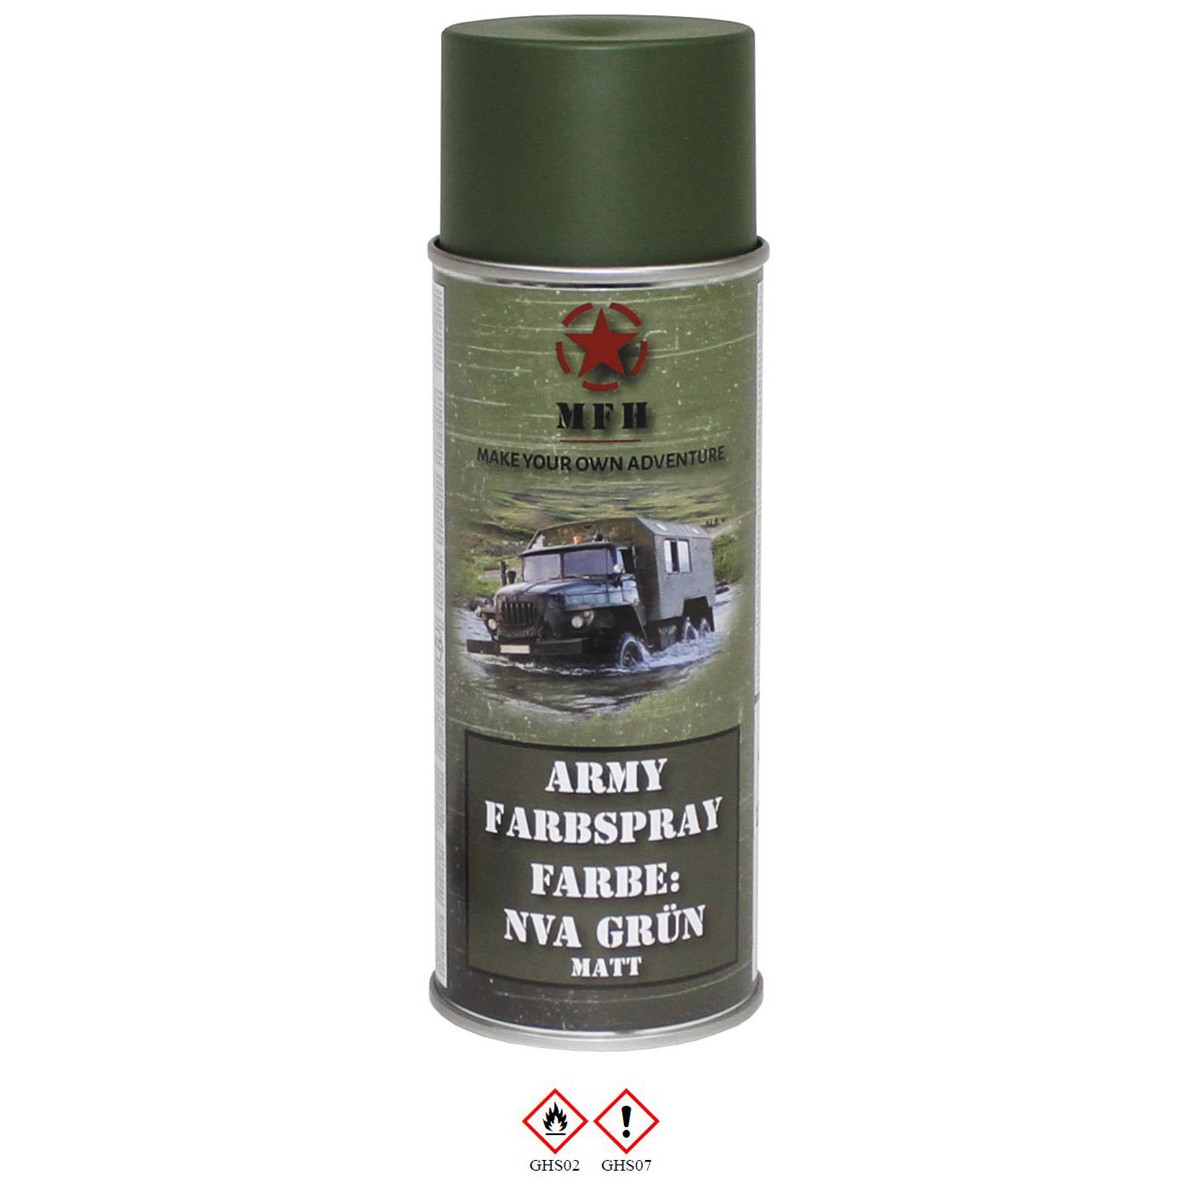 Farbspray, "Army" NVA GRÜN, matt, 400 ml